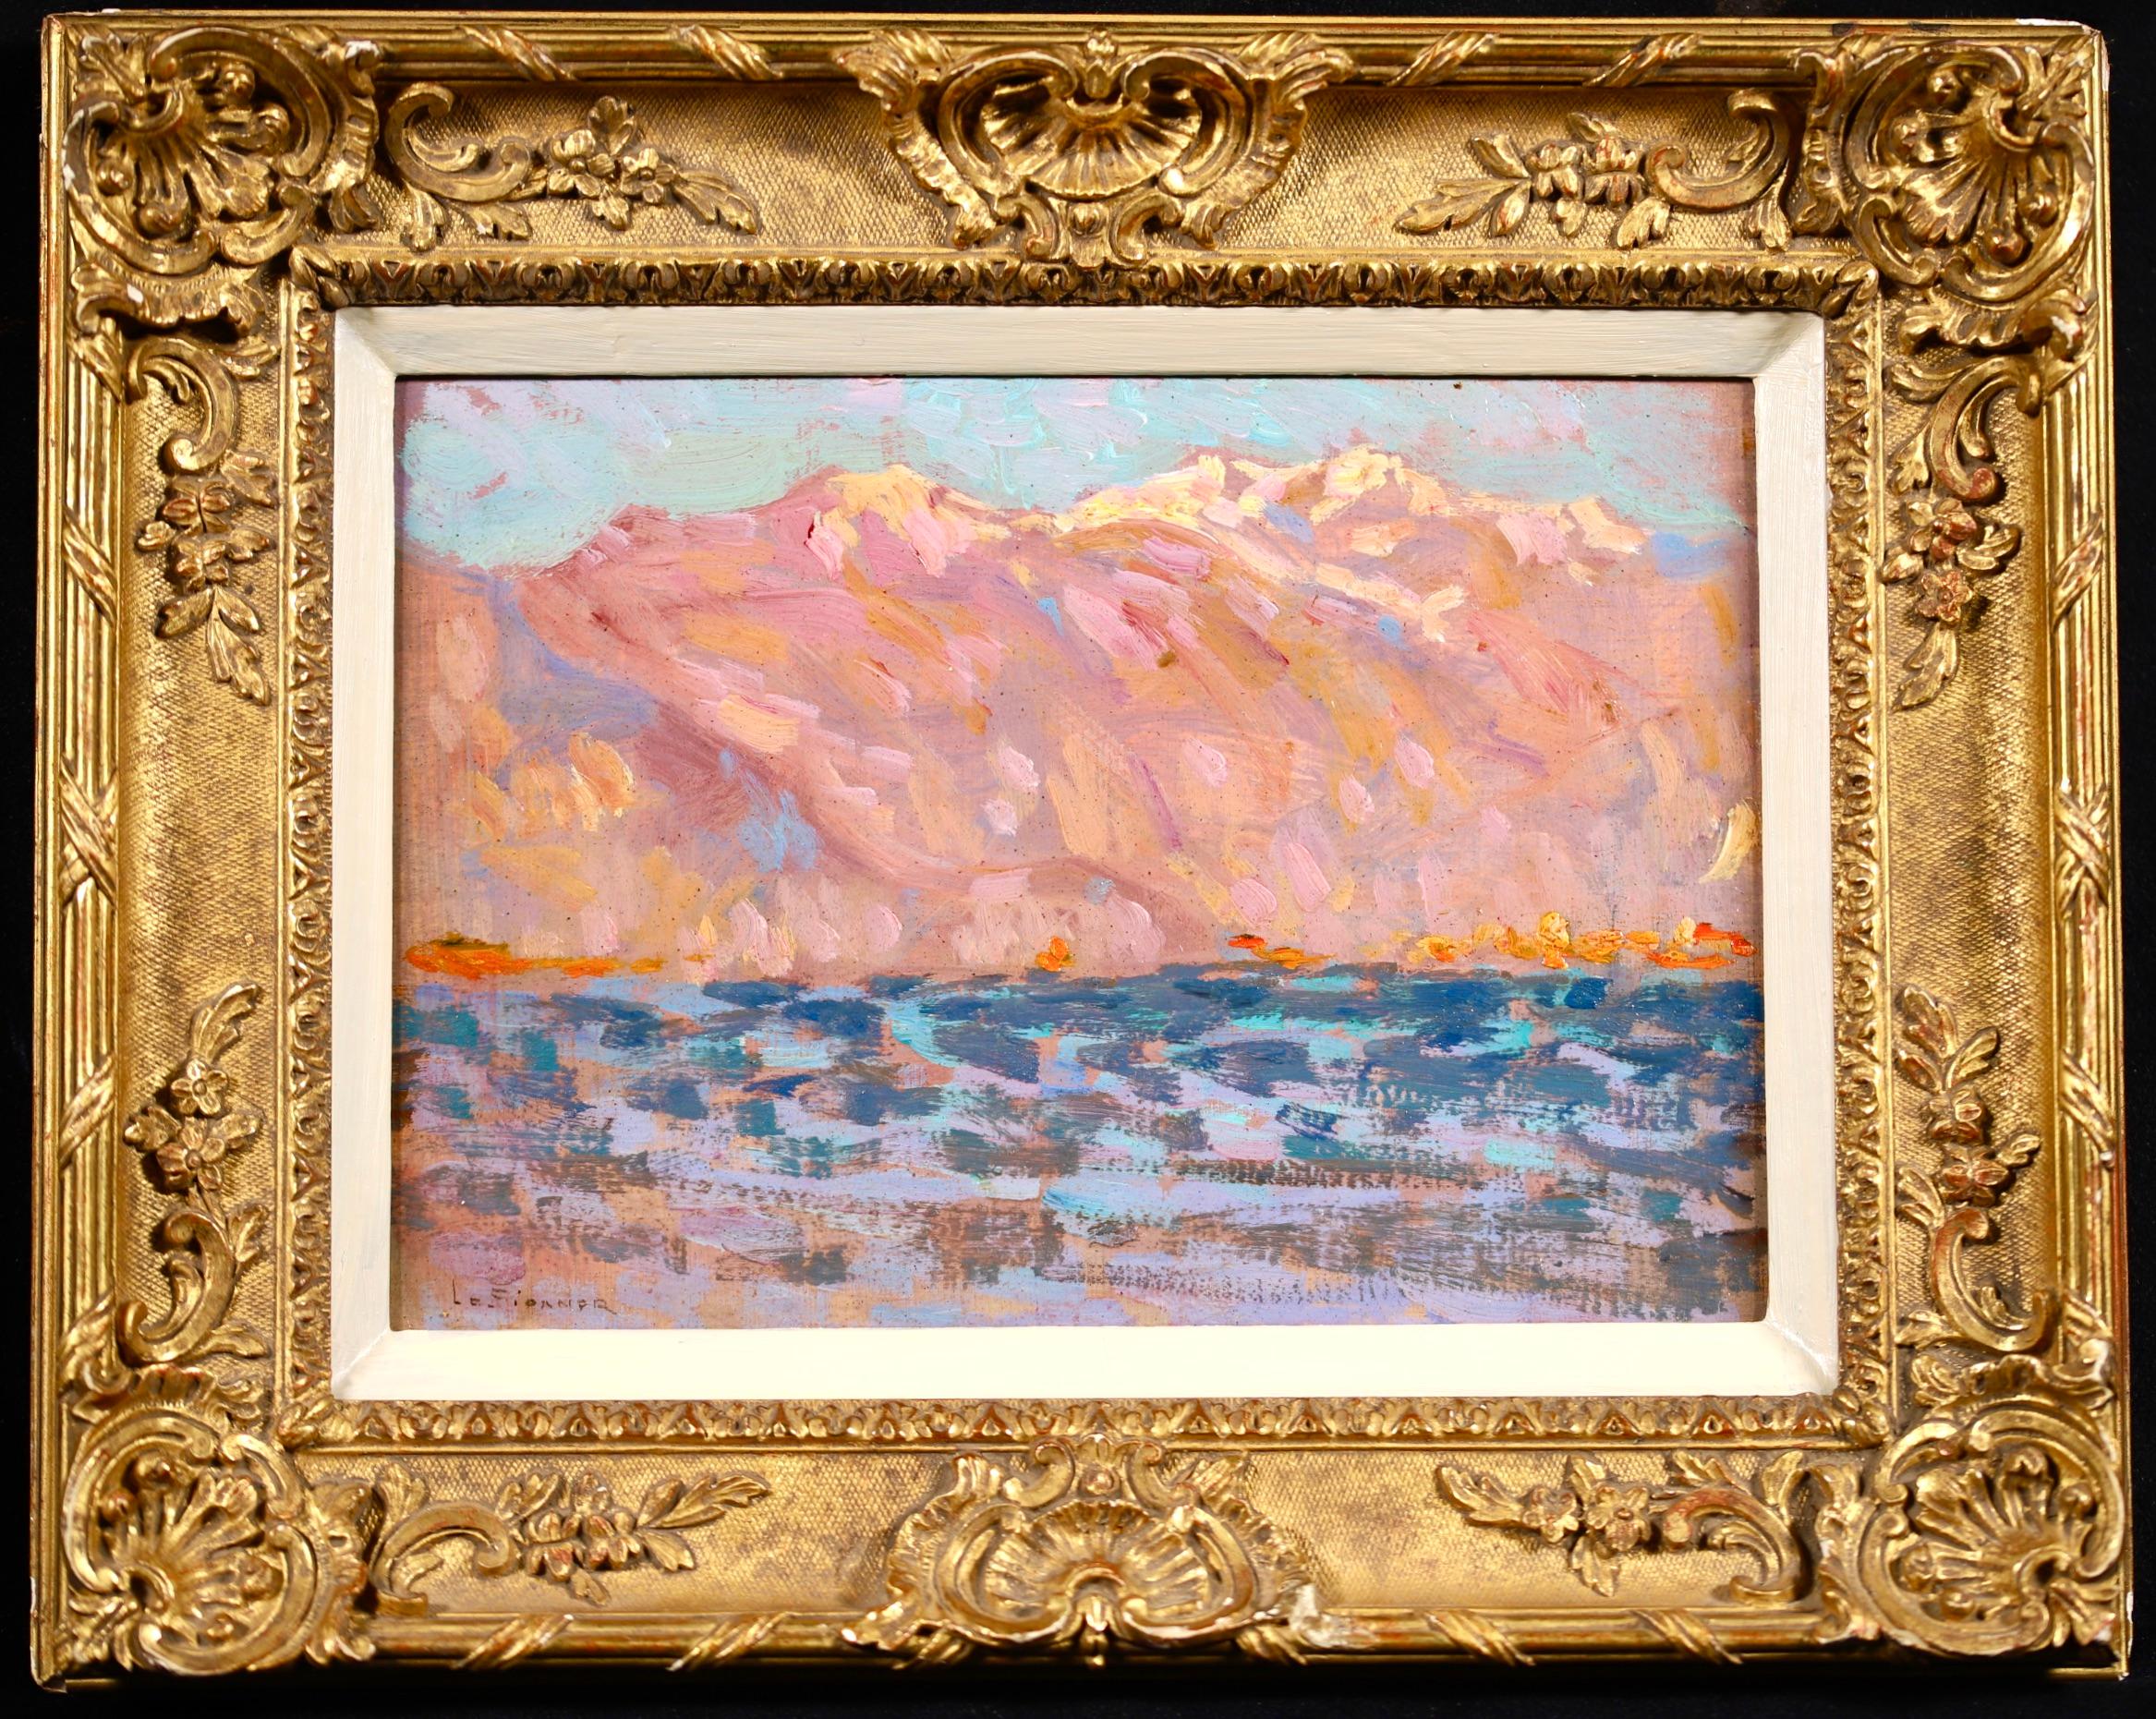 Signiertes postimpressionistisches Landschaftsöl auf Tafel um 1910 von dem französischen Maler Henri le Sidaner. Das Werk zeigt eine Ansicht des Lago Maggiore, eines großen Sees auf der Südseite der Alpen an der Grenze zwischen Italien und der